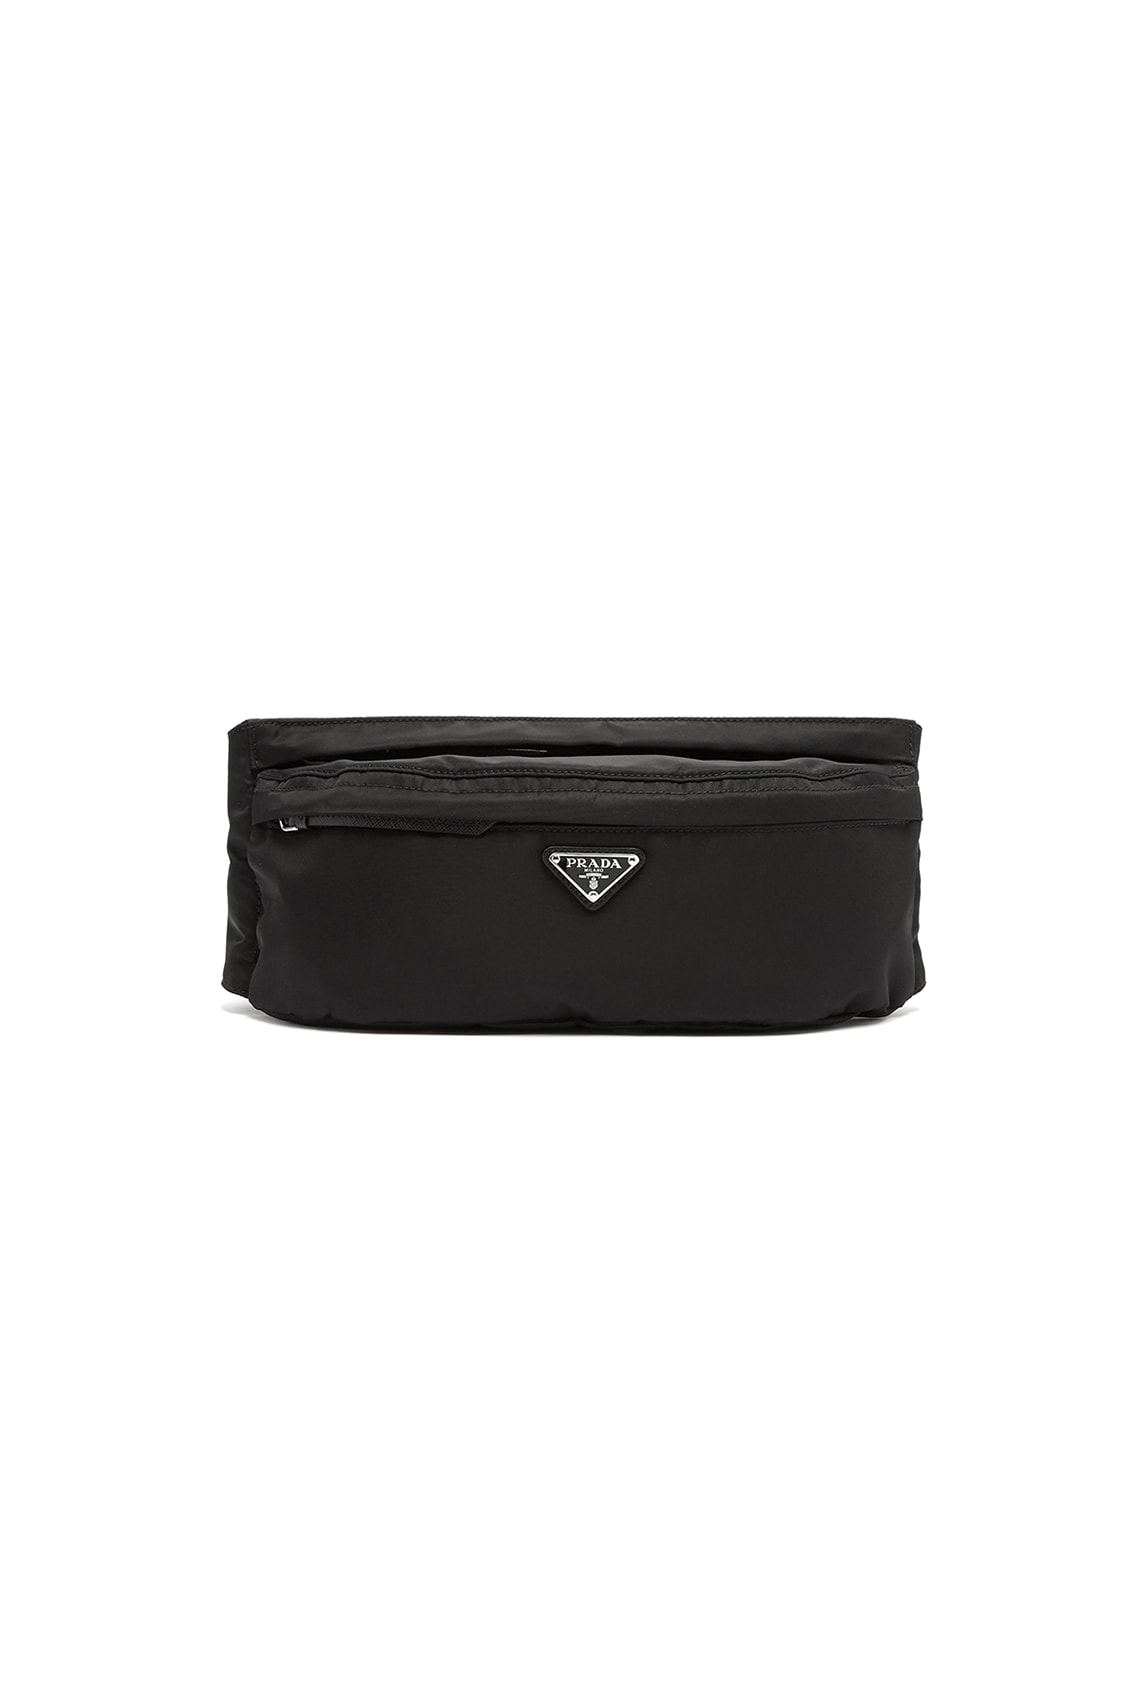 Prada Releases Black Nylon Belt Bag | Hypebae